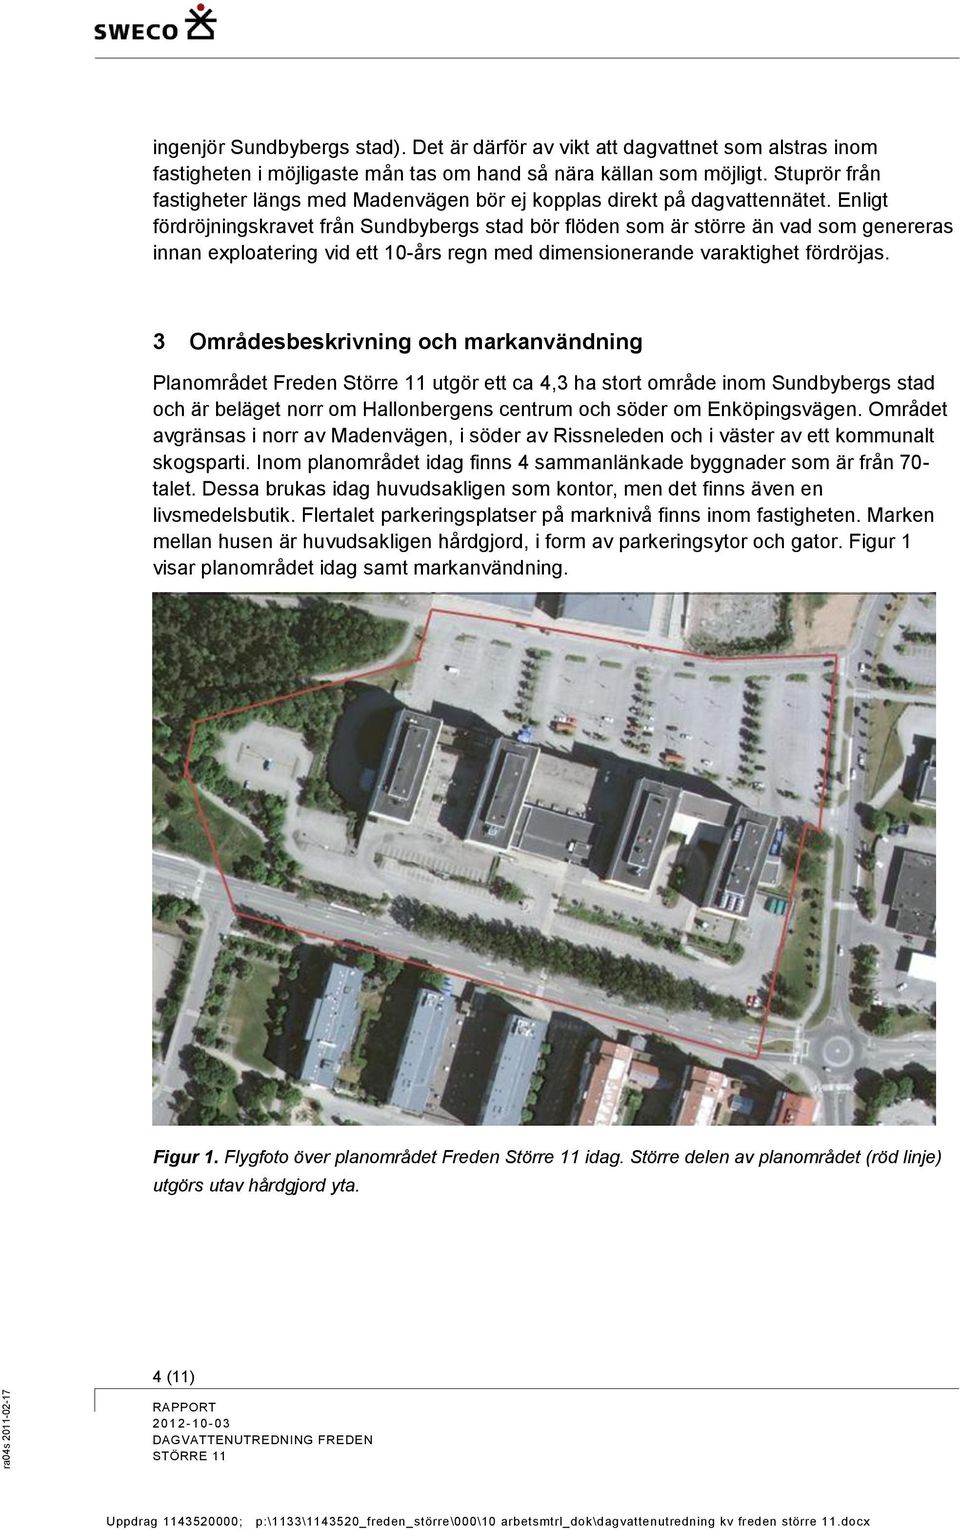 Enligt fördröjningskravet från Sundbybergs stad bör flöden som är större än vad som genereras innan exploatering vid ett 10-års regn med dimensionerande varaktighet fördröjas.